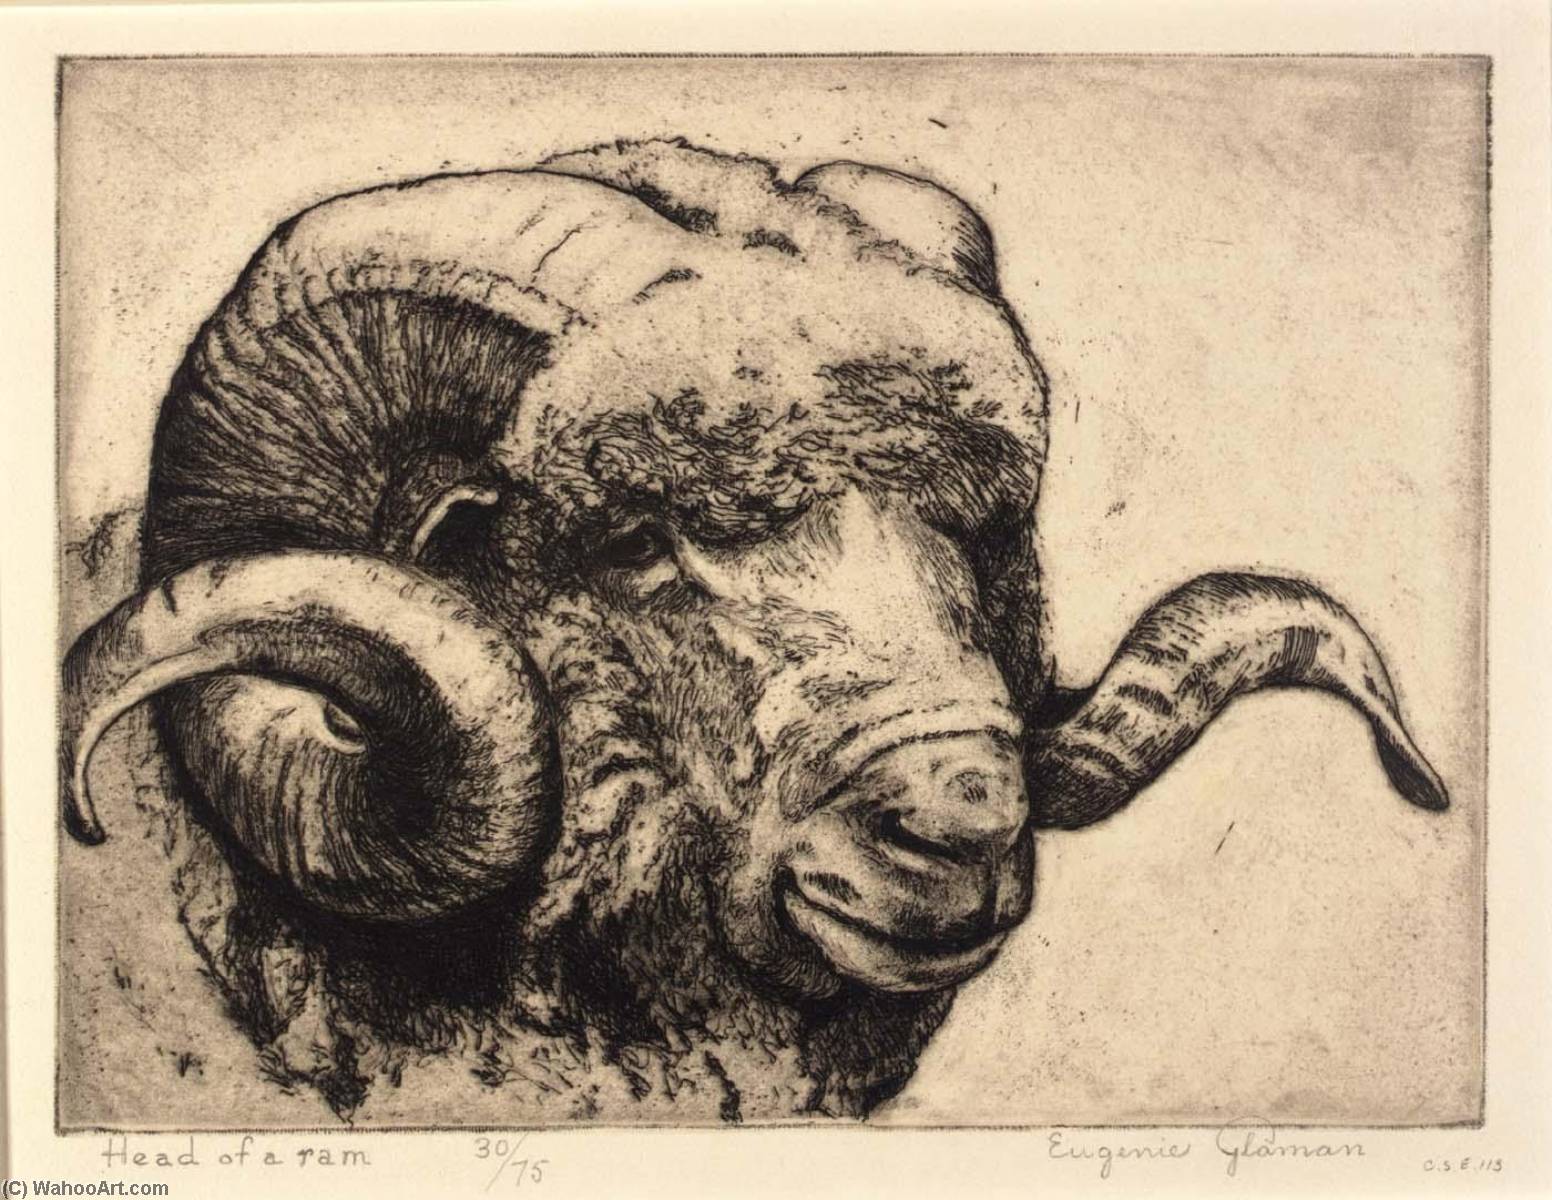 Wikioo.org - Bách khoa toàn thư về mỹ thuật - Vẽ tranh, Tác phẩm nghệ thuật Eugenie Fish Glaman - Head of a Ram